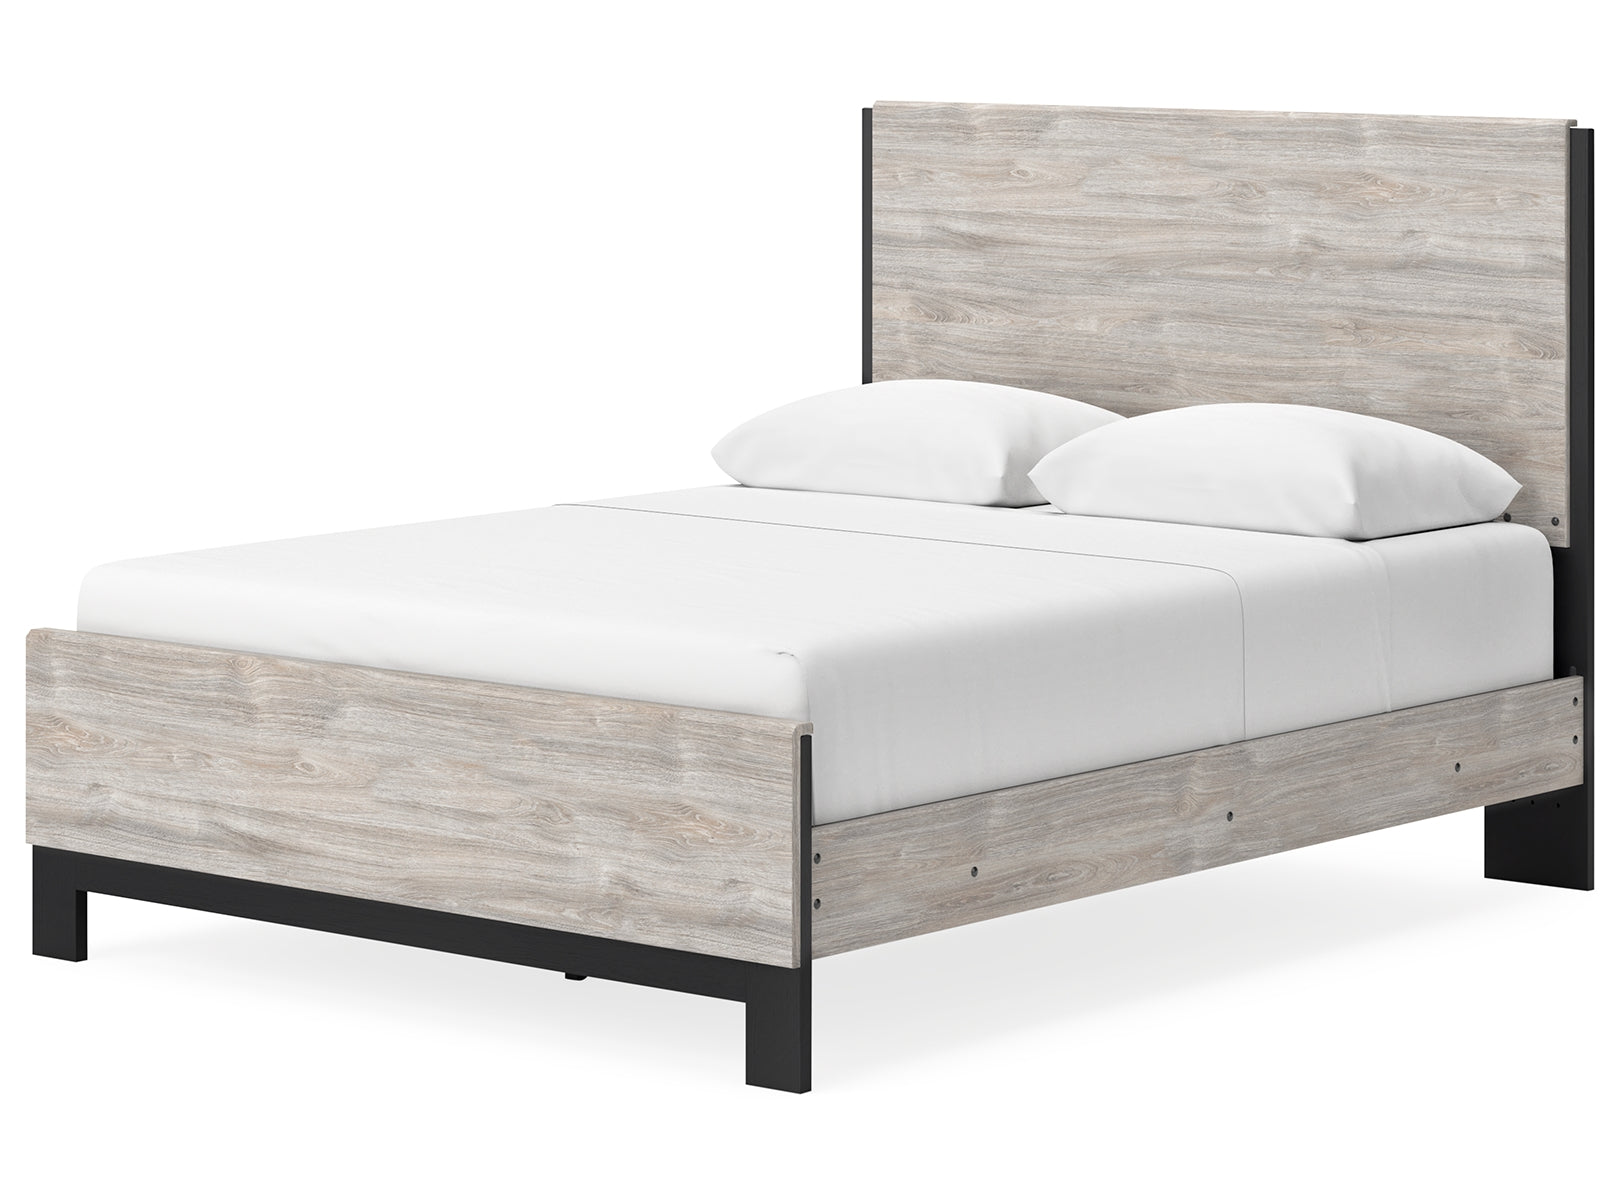 Vessalli Queen Panel Bed with Mirrored Dresser and 2 Nightstands